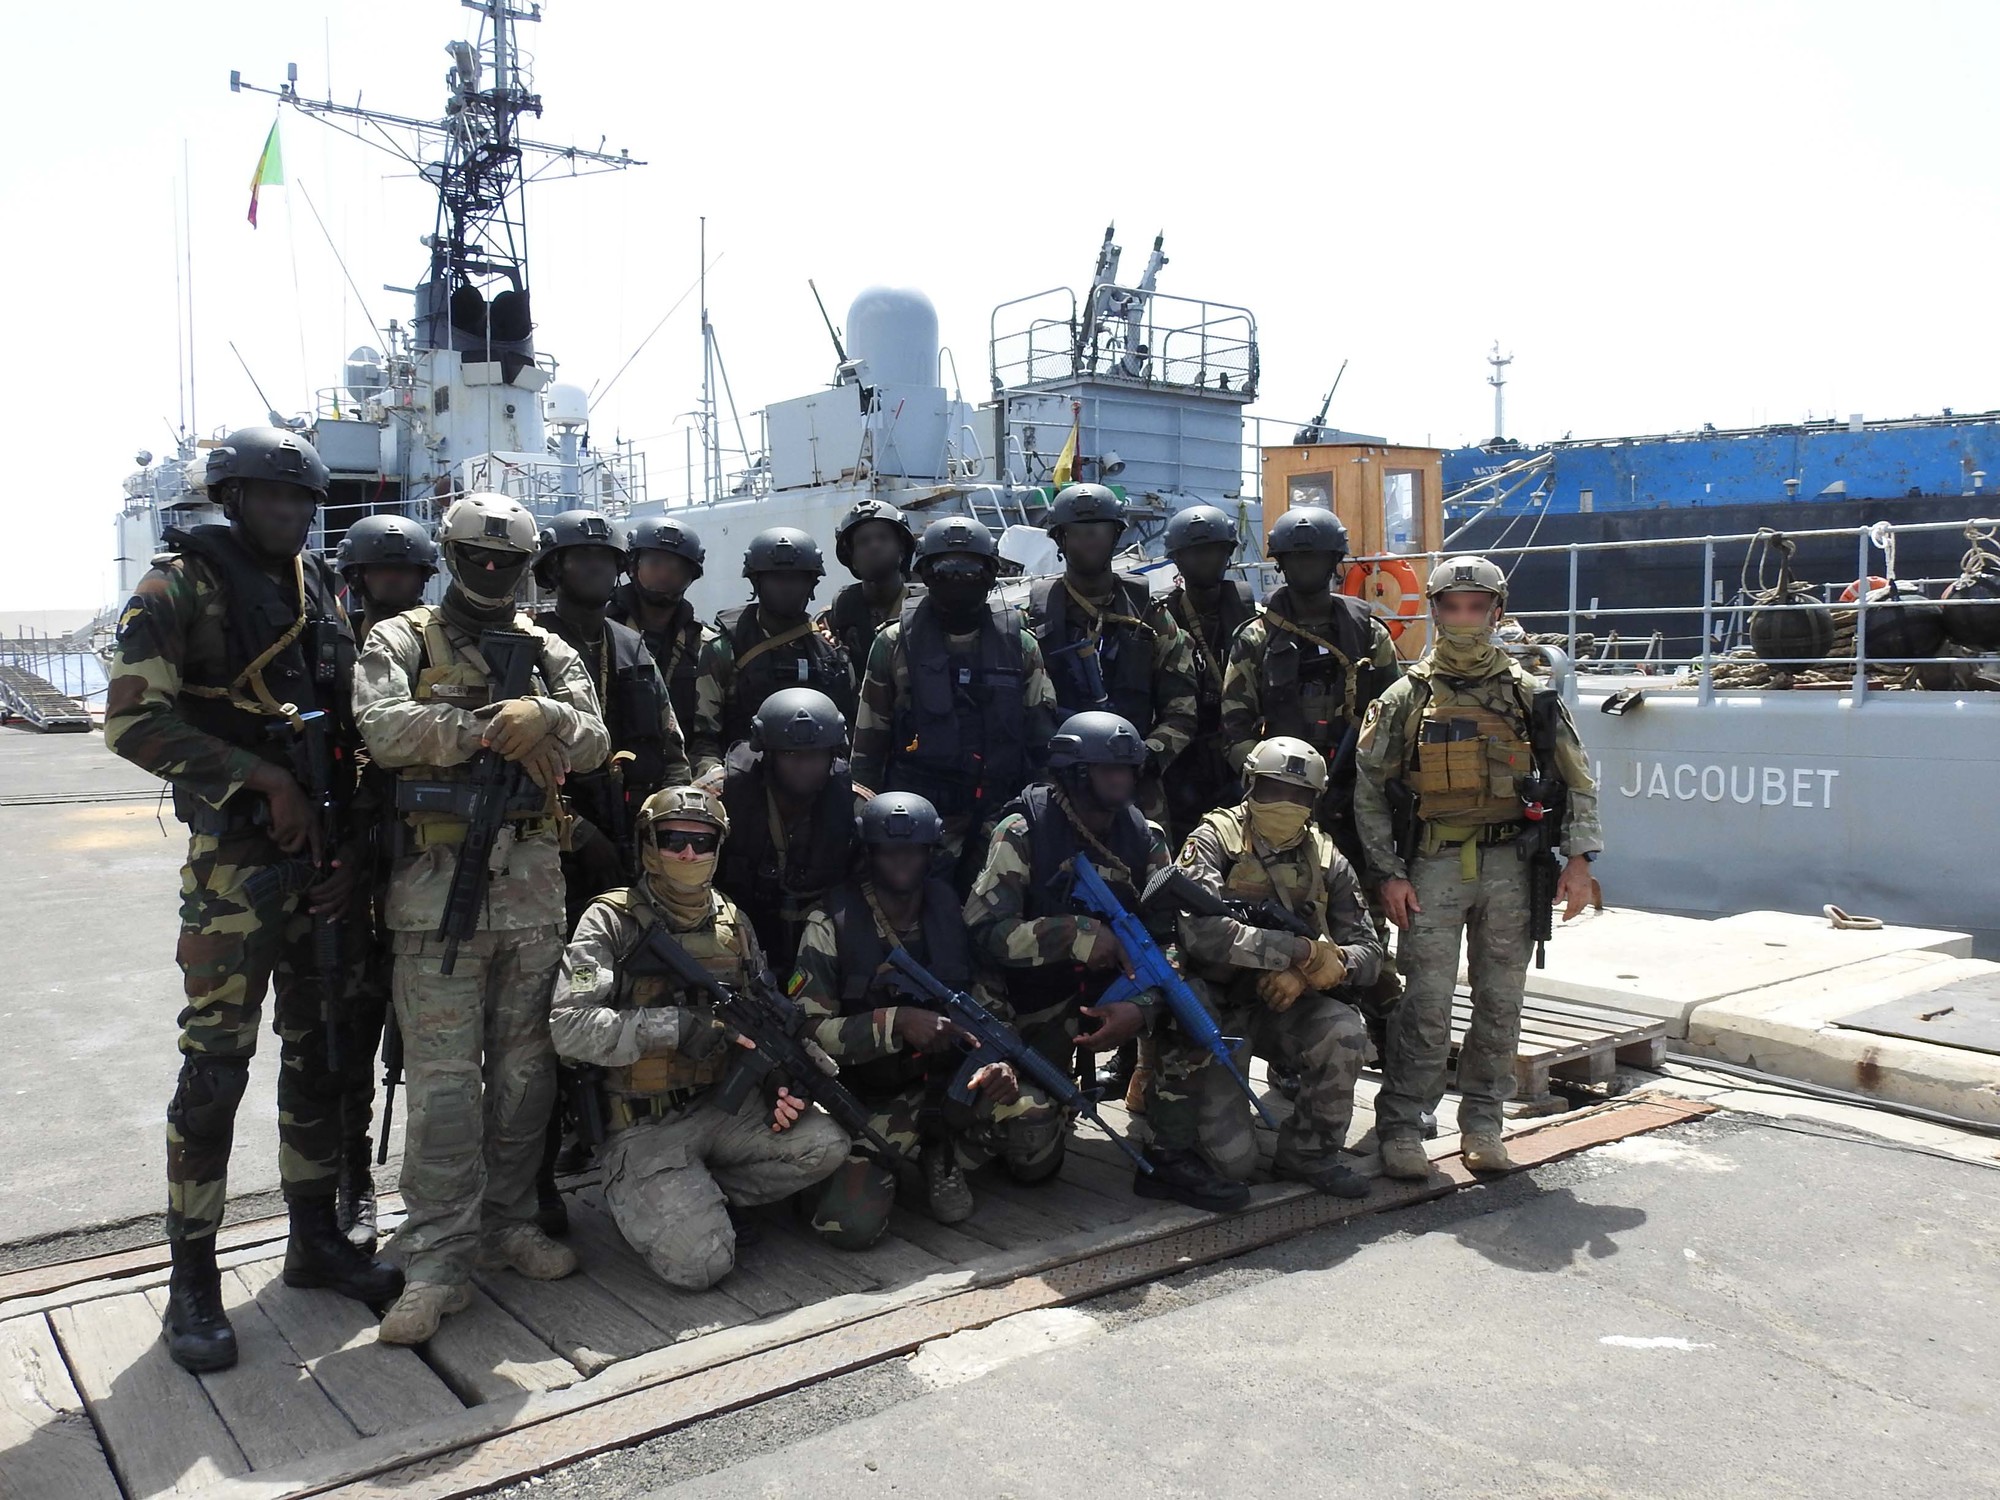 Des commandos-marine franco-sénégalais s’entraînent à bord de l’aviso EV Jacoubet 